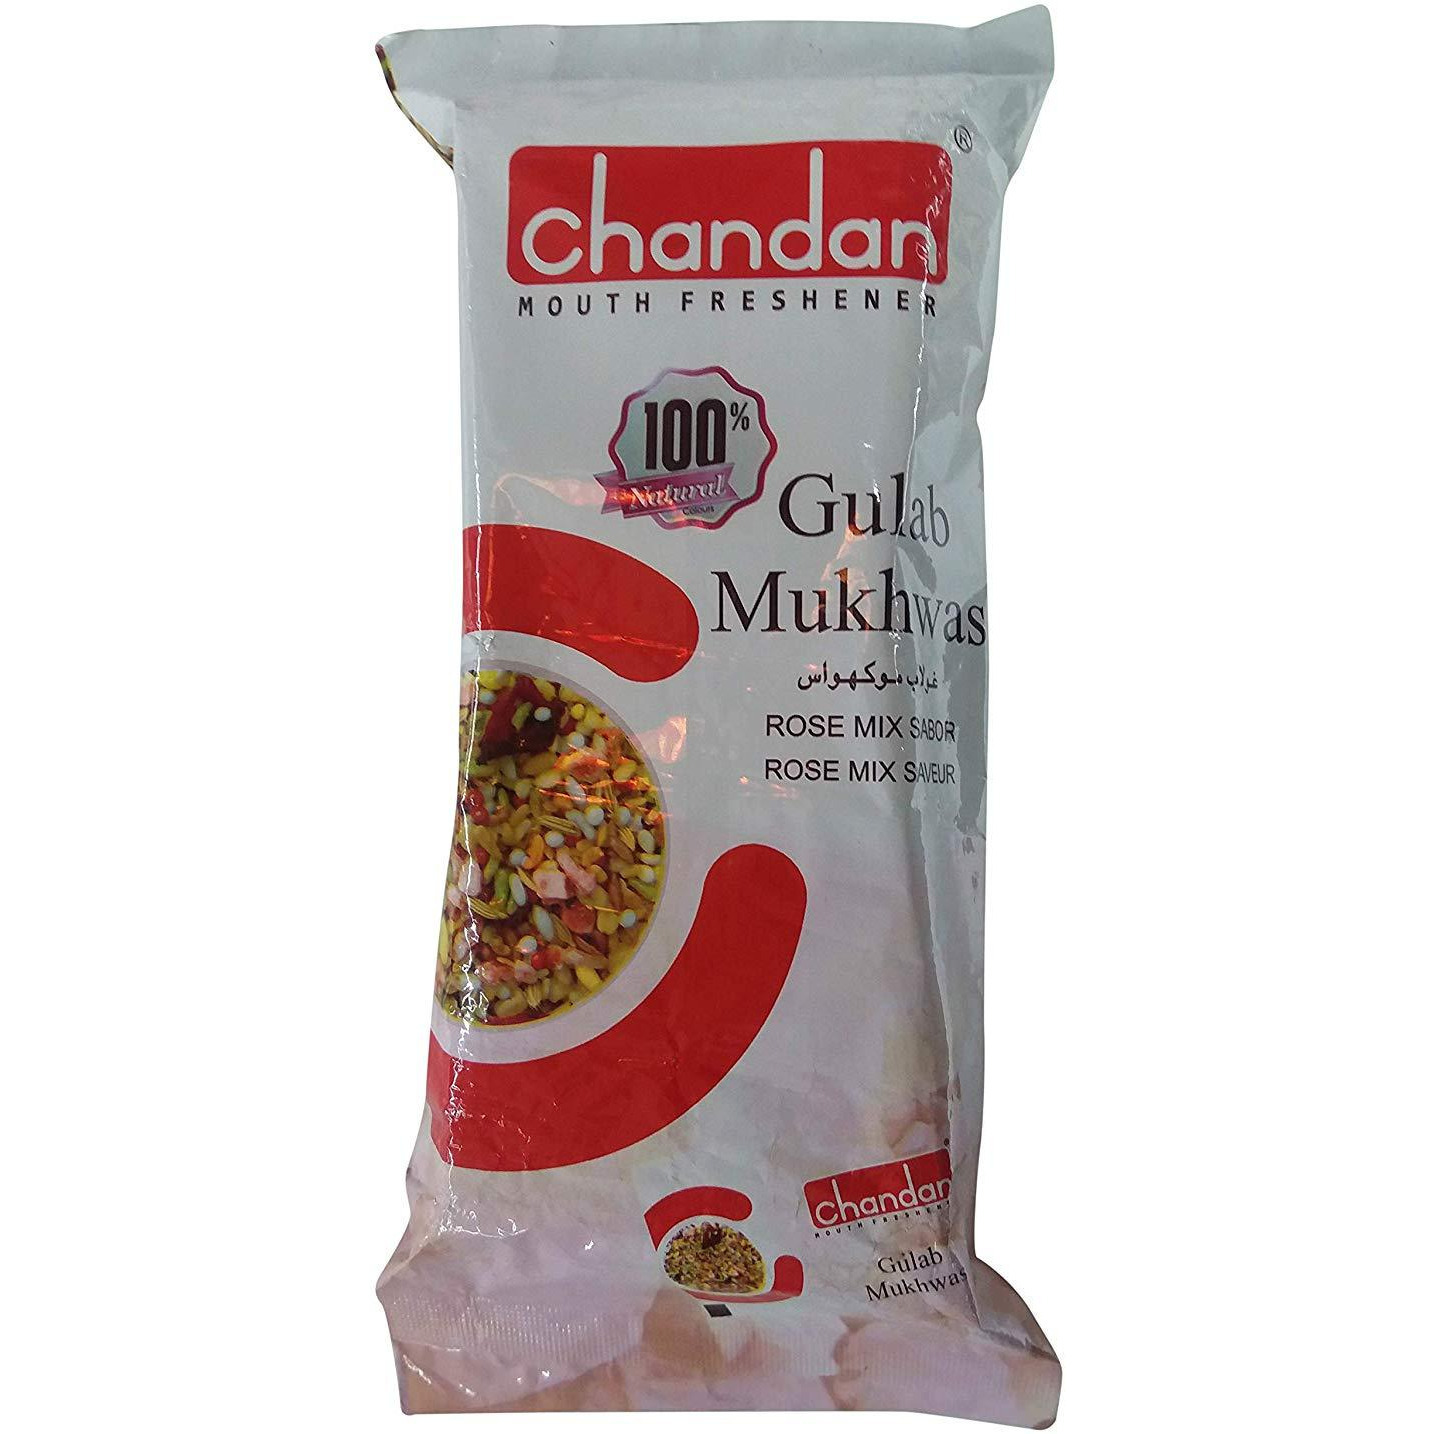 Pack of 4 - Chandan Gulab Mukhwas - 110 Gm